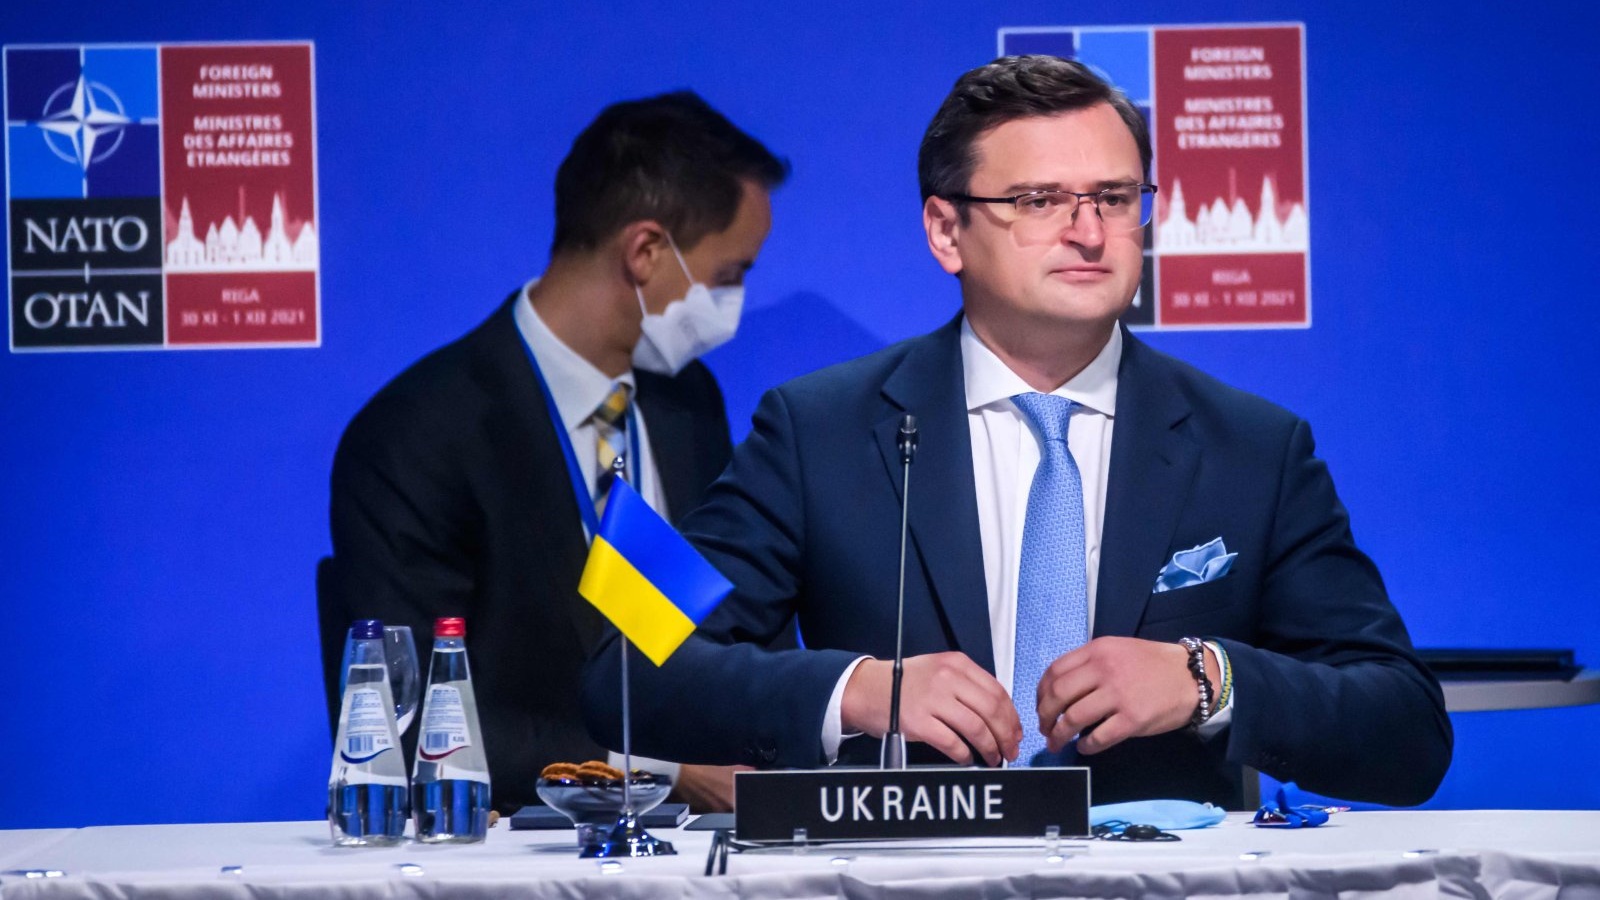 وزير الخارجية الأوكراني دميترو كوليبا (إلى اليمين) يحضر جلسة اجتماع وزراء خارجية الناتو مع جورجيا وأوكرانيا في 1 كانون الأول/ديسمبر 2021 في ريغا، لاتفيا